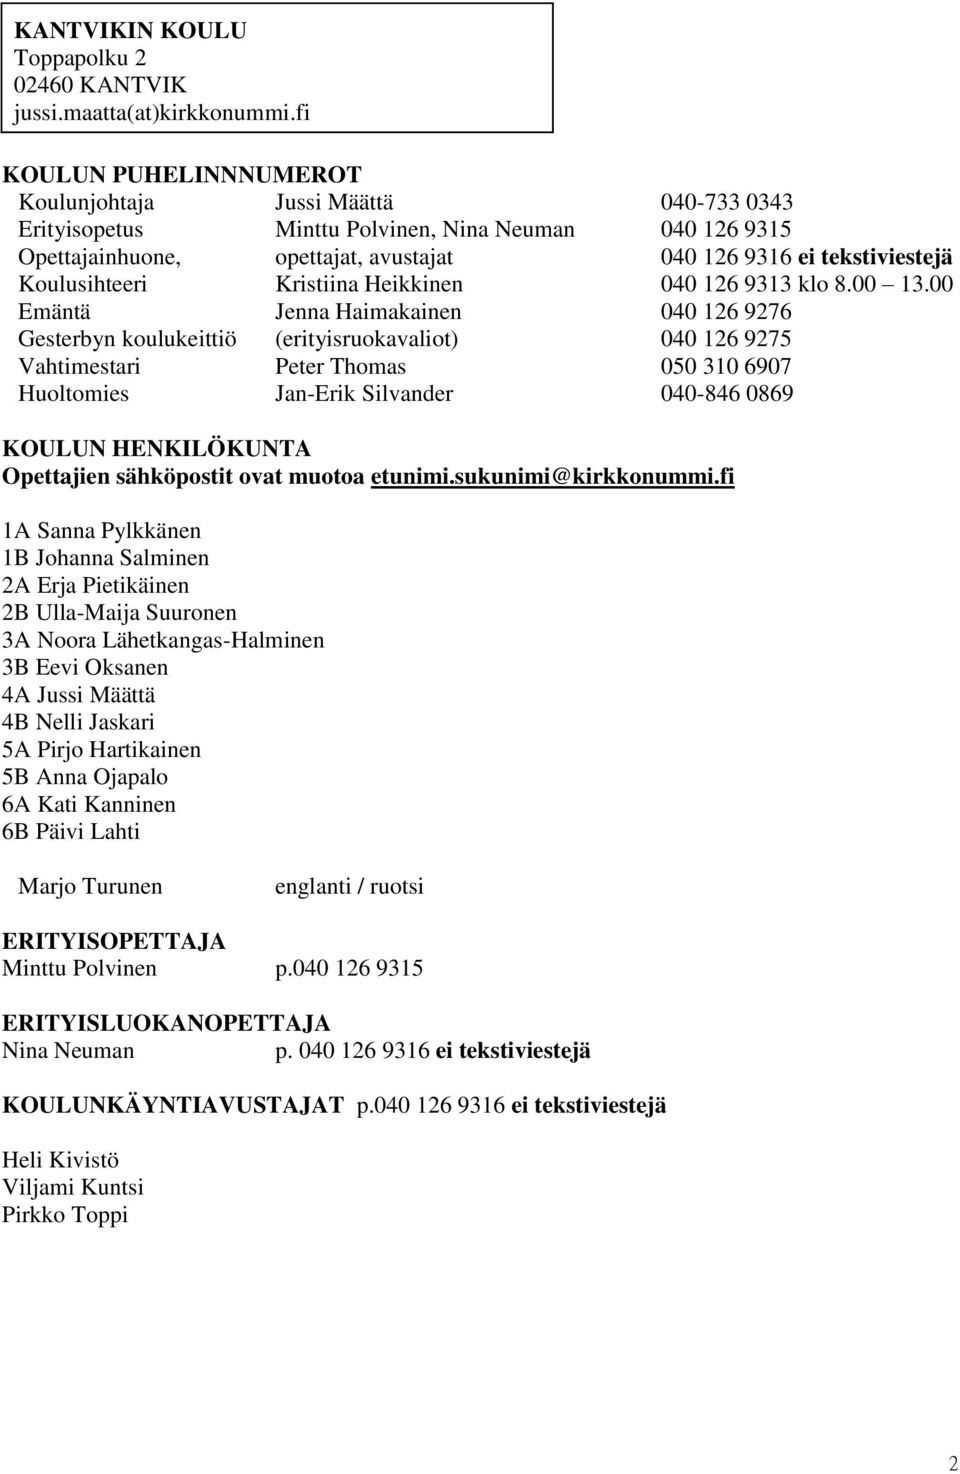 Koulusihteeri Kristiina Heikkinen 040 126 9313 klo 8.00 13.